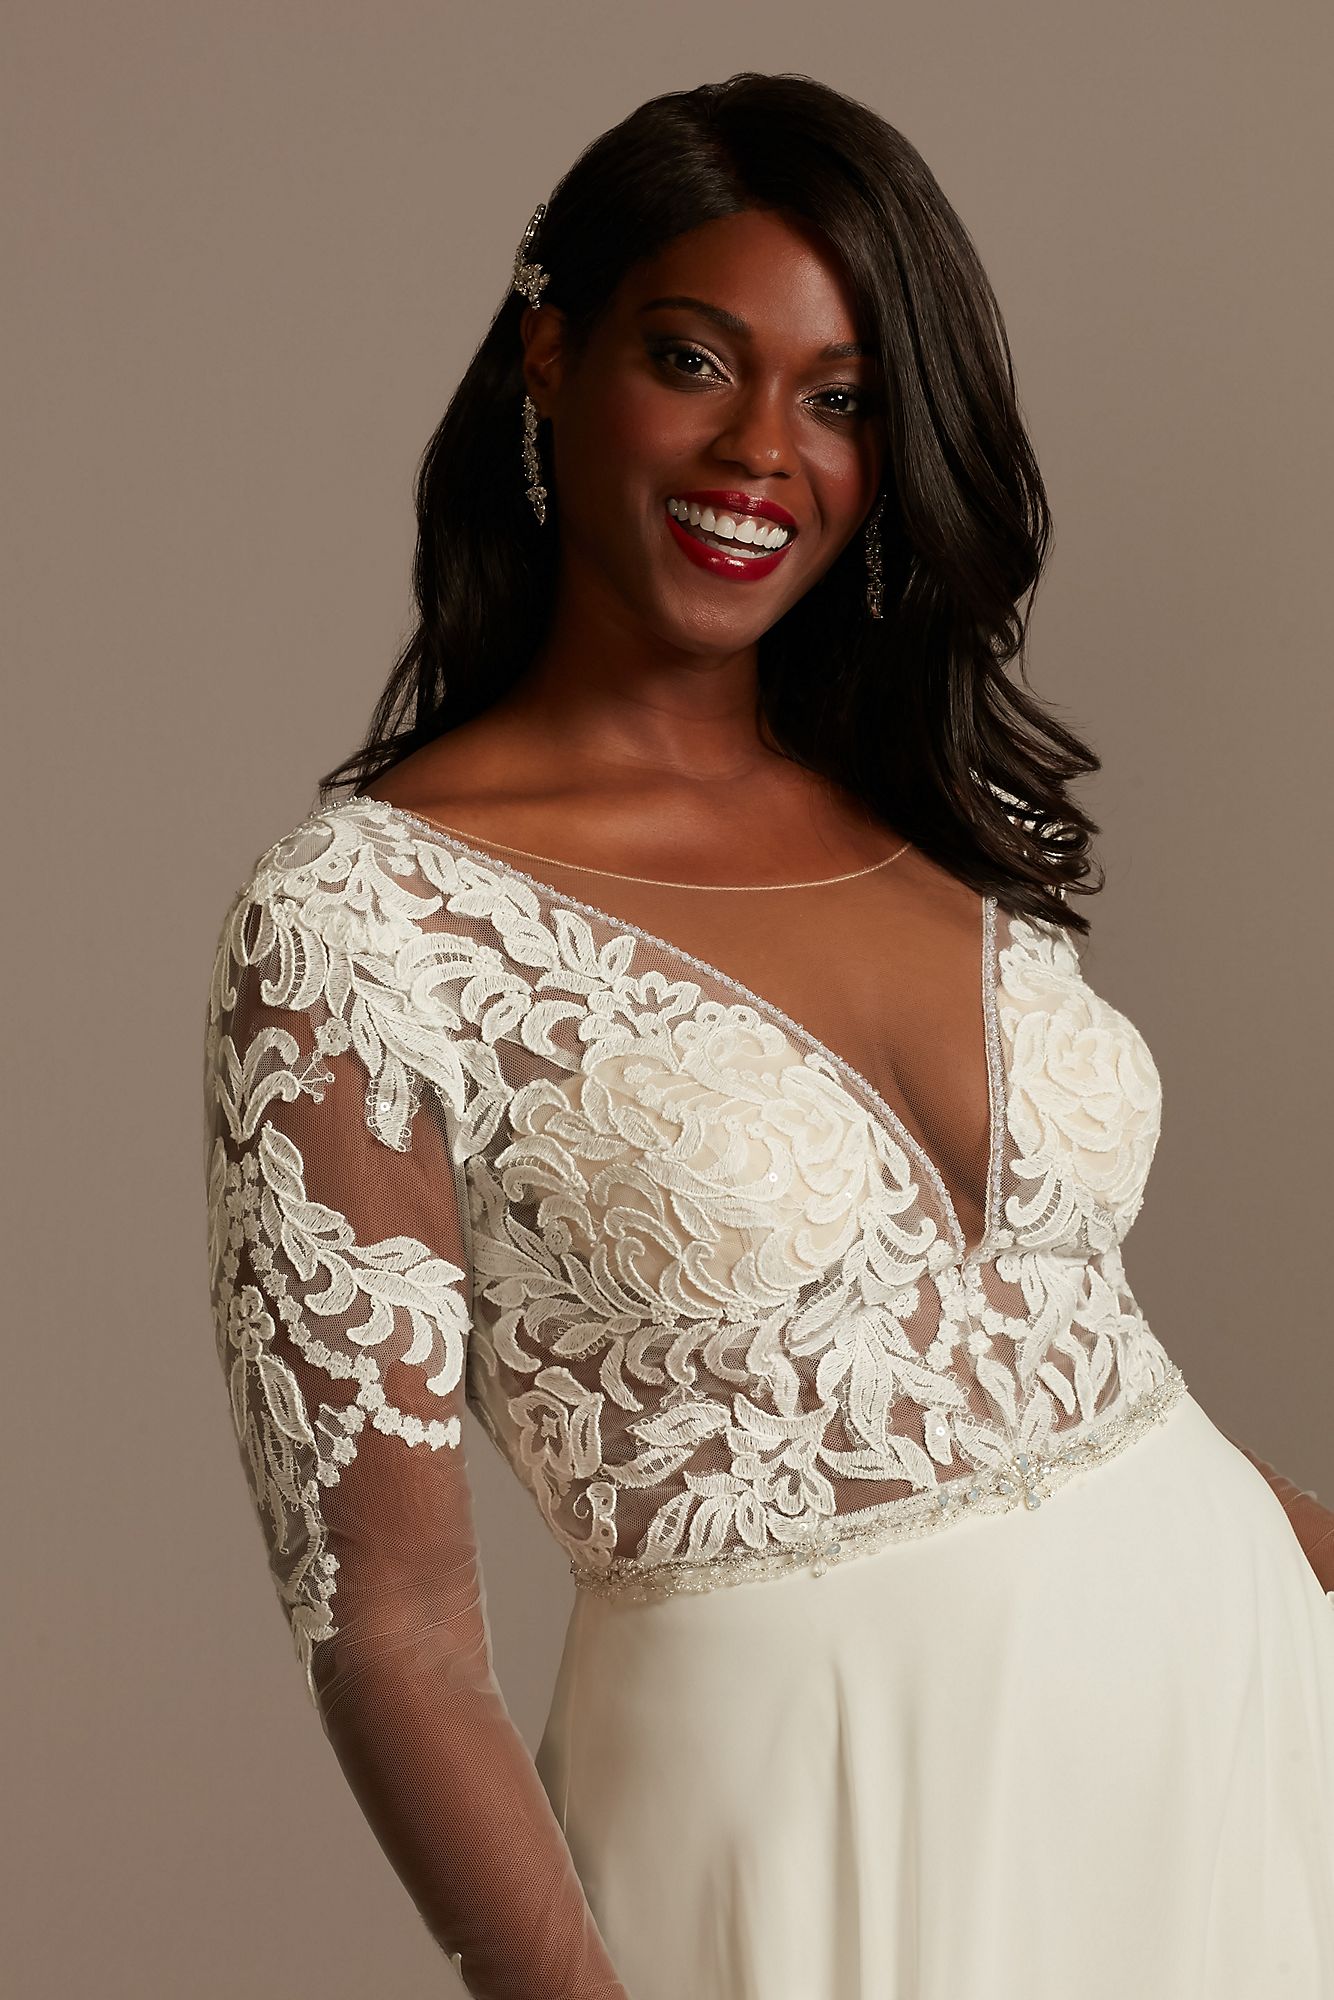 Lace Long Sleeve Chiffon Plus Size Wedding Dress Galina Signature 9SLSWG842